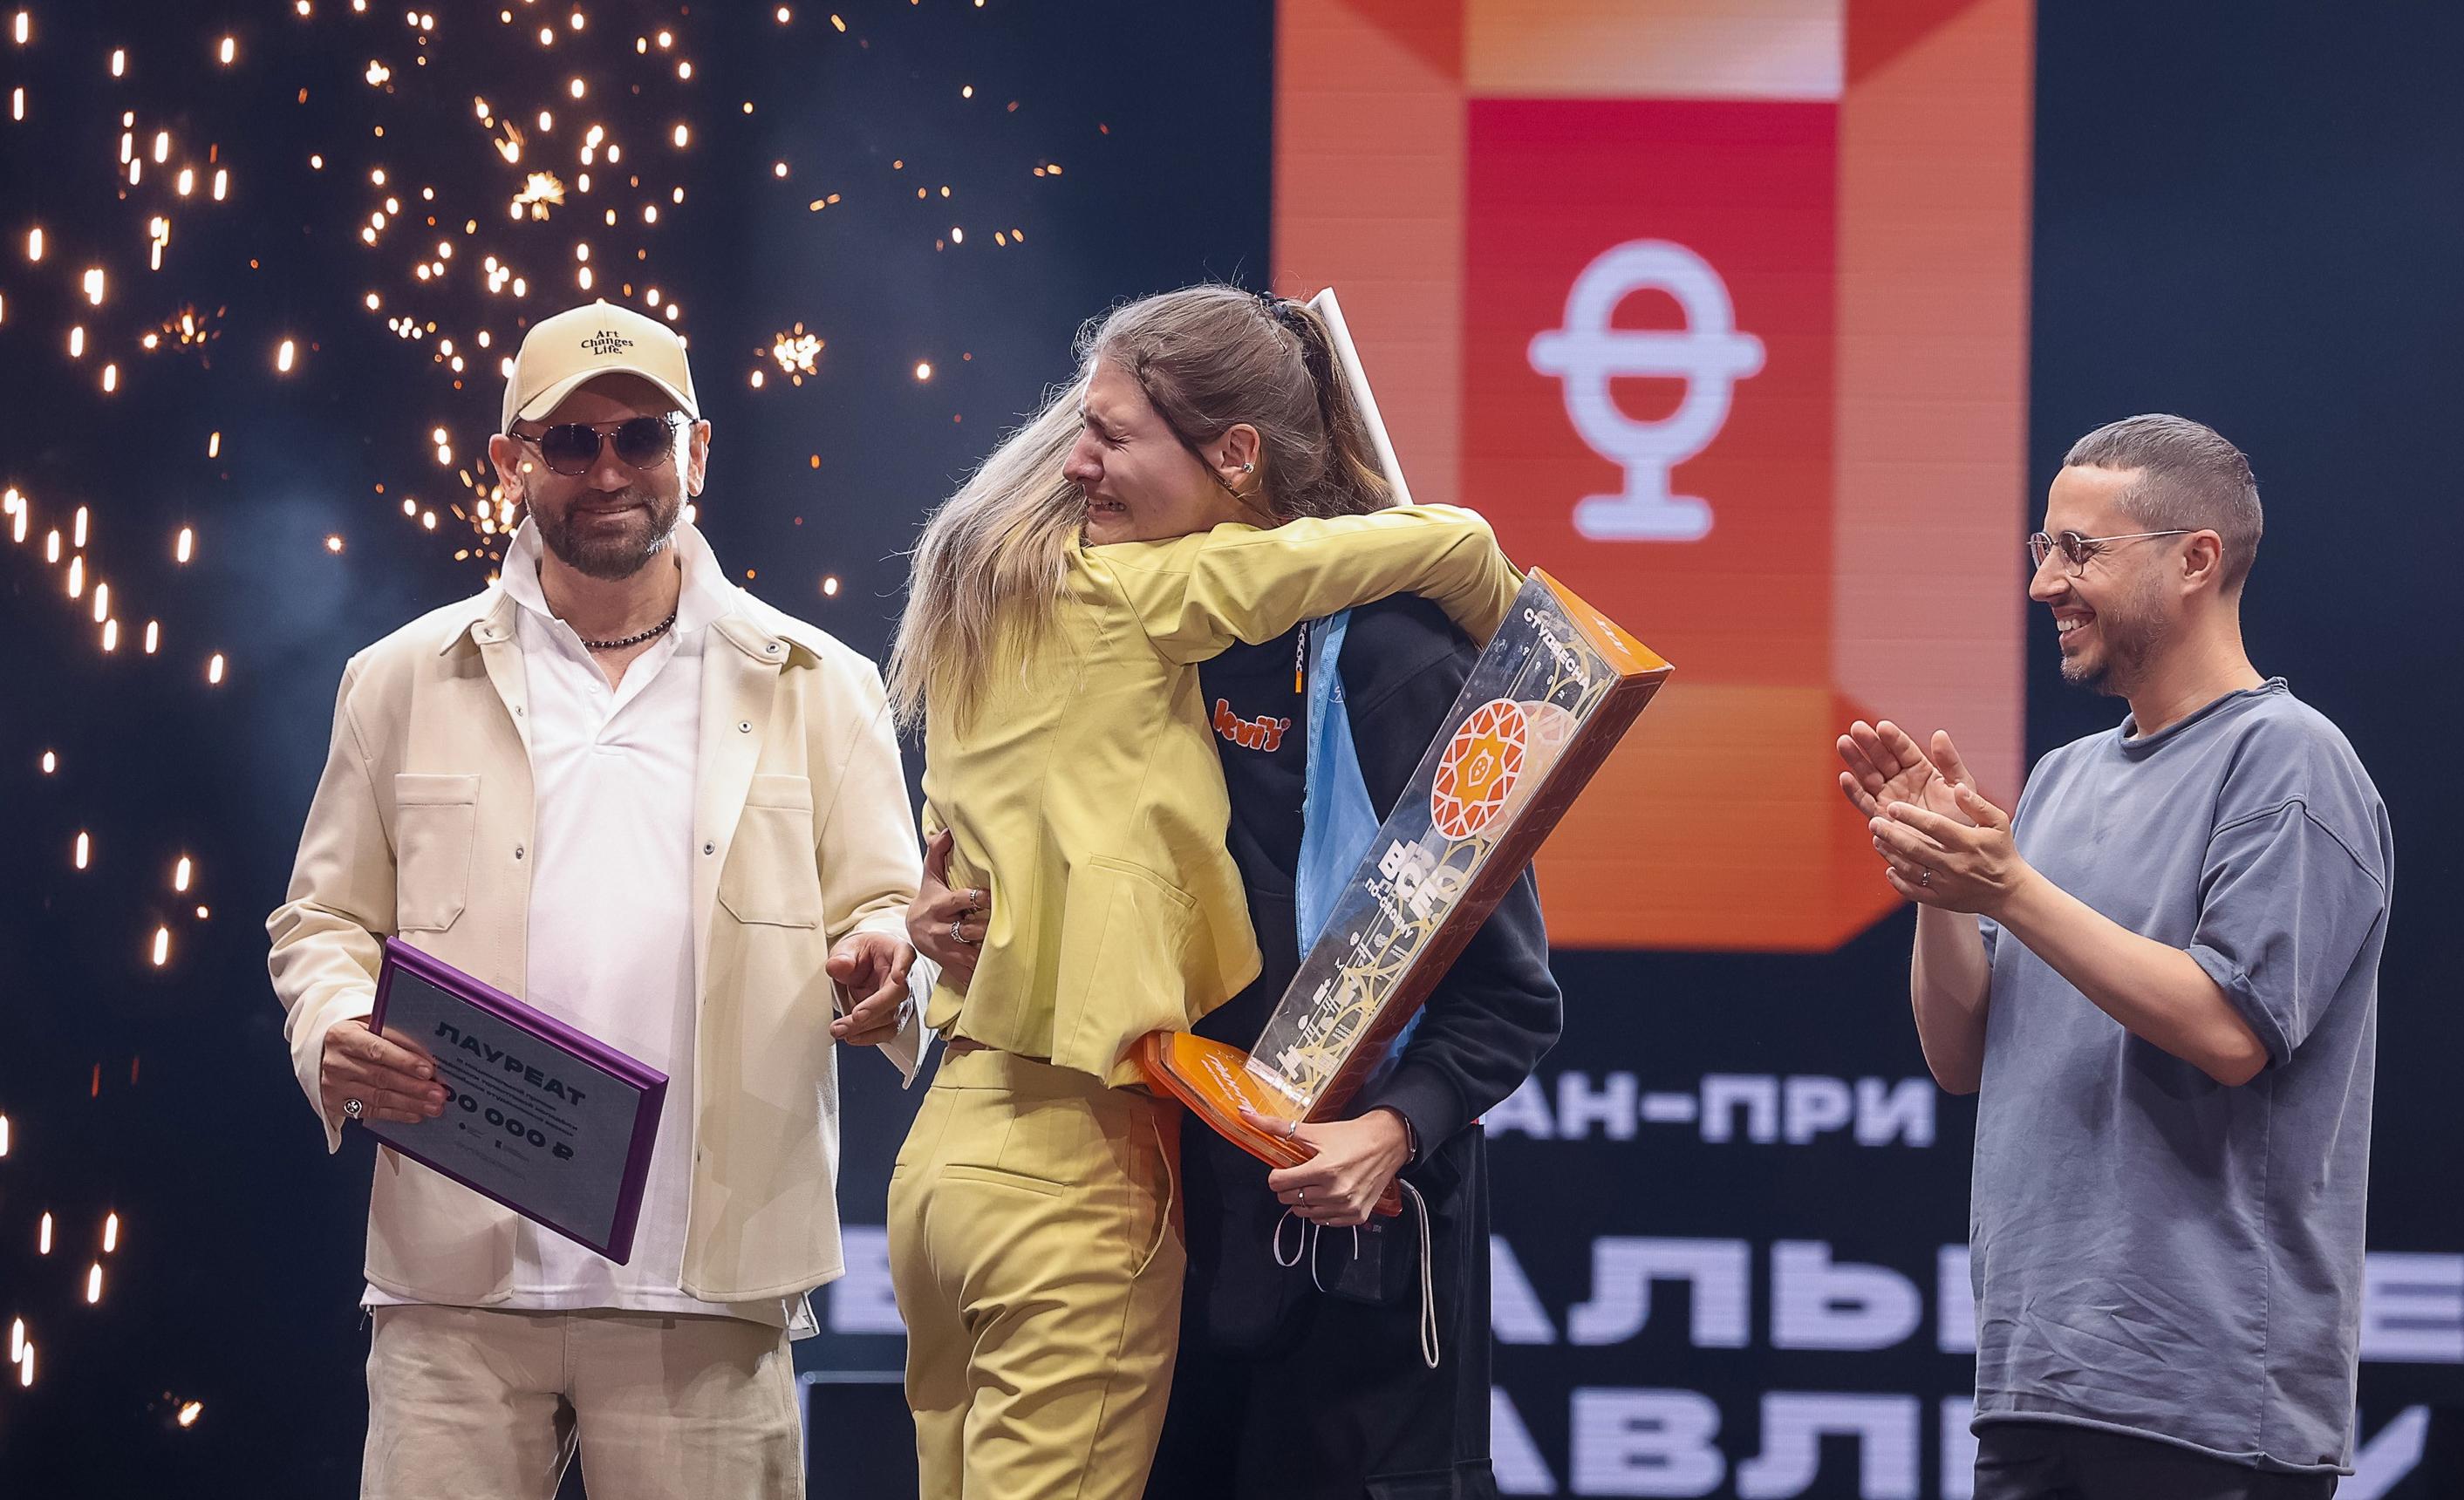 XXXI Всероссийский фестиваль «Российская студенческая весна» вузов назвал имена самых творческих студентов России